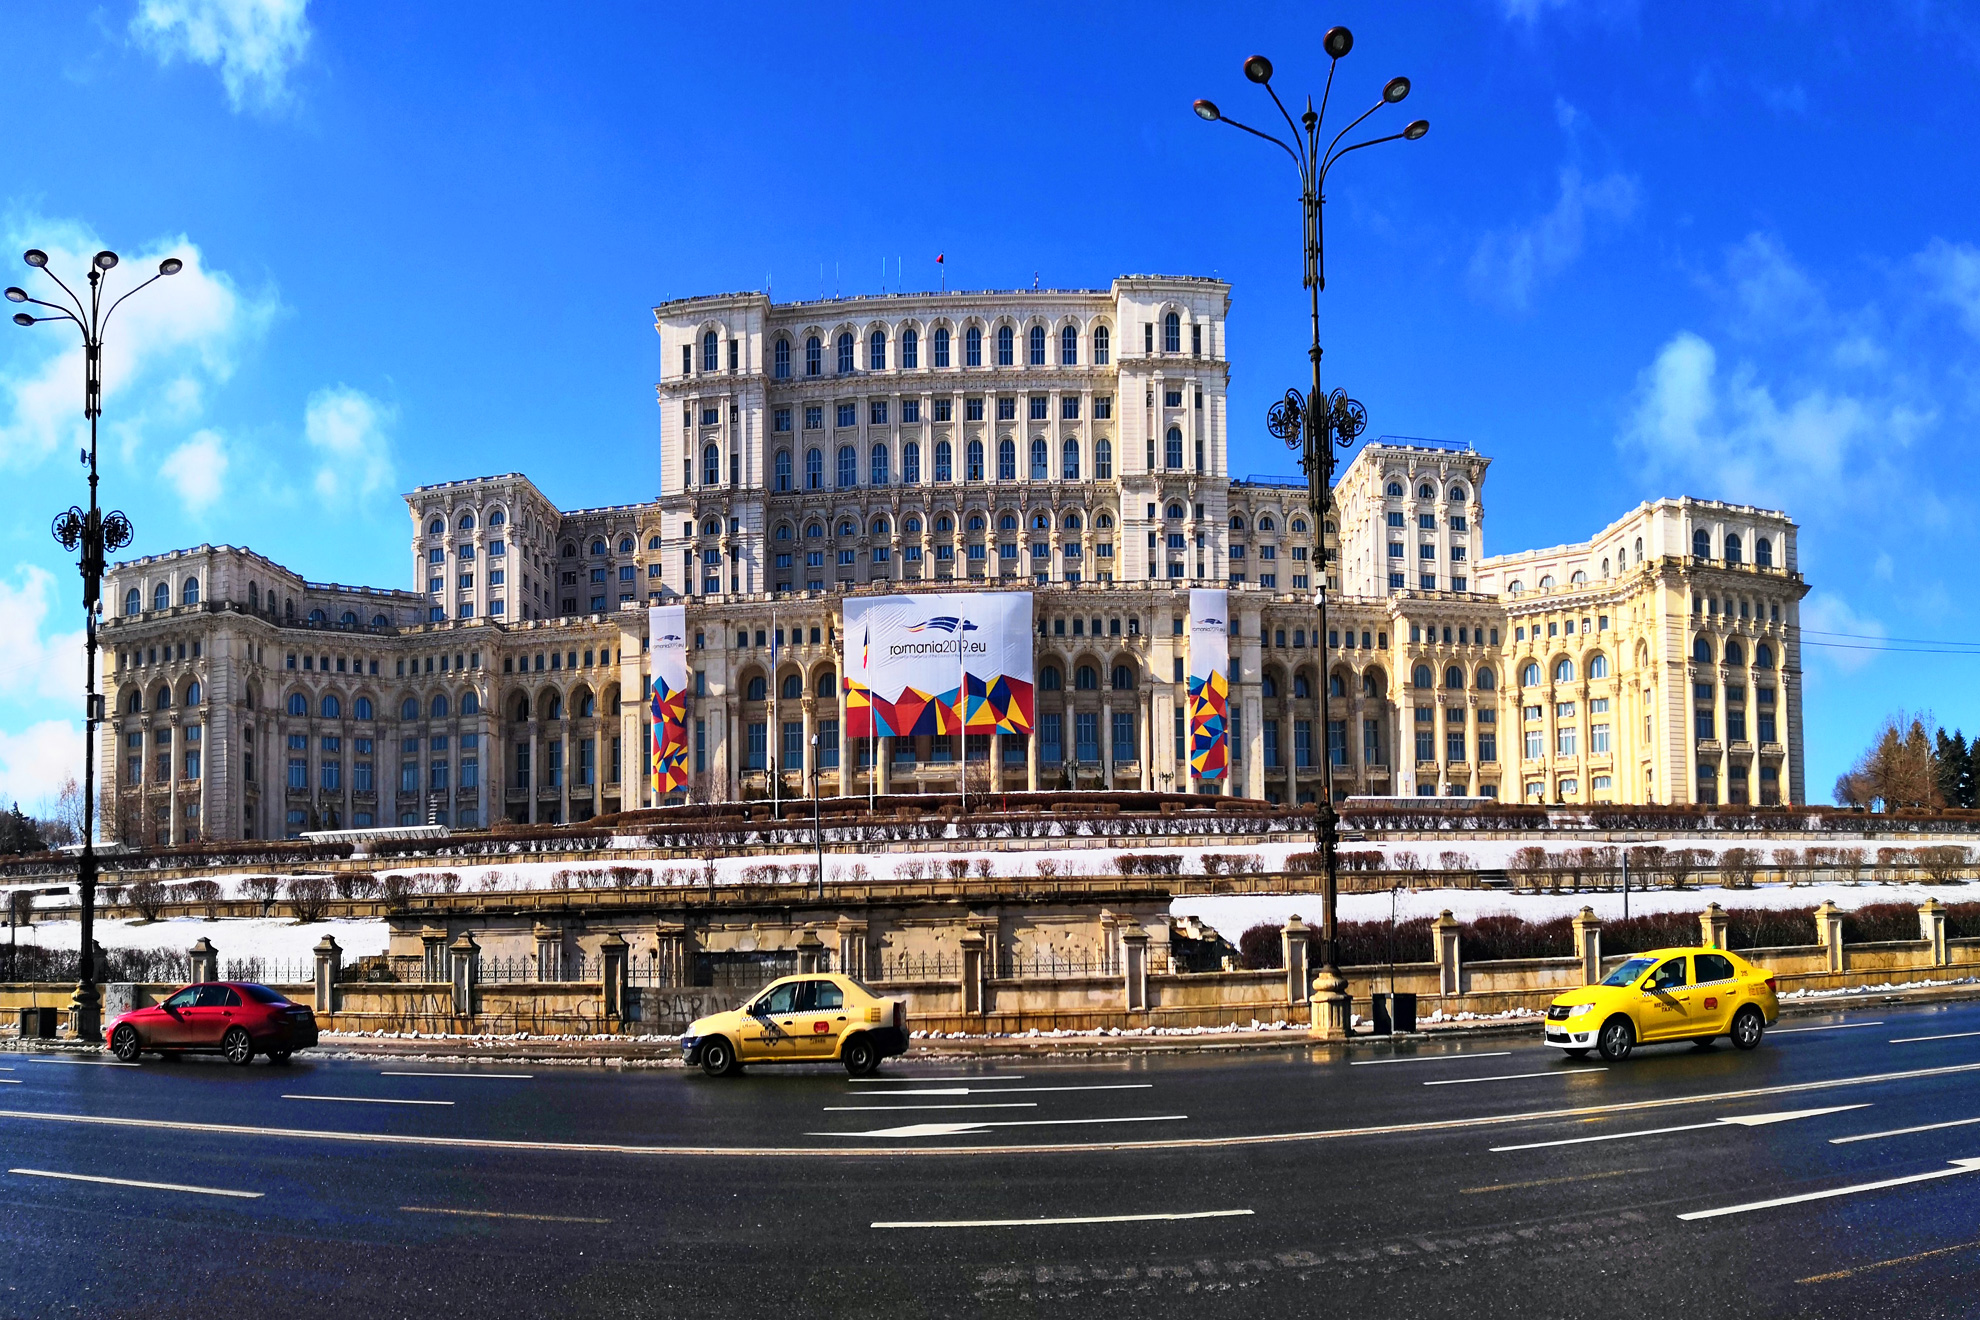 СПА Уикенд - Термите на Букурещ през Търговище, Шумен и Разград - Изображение 19